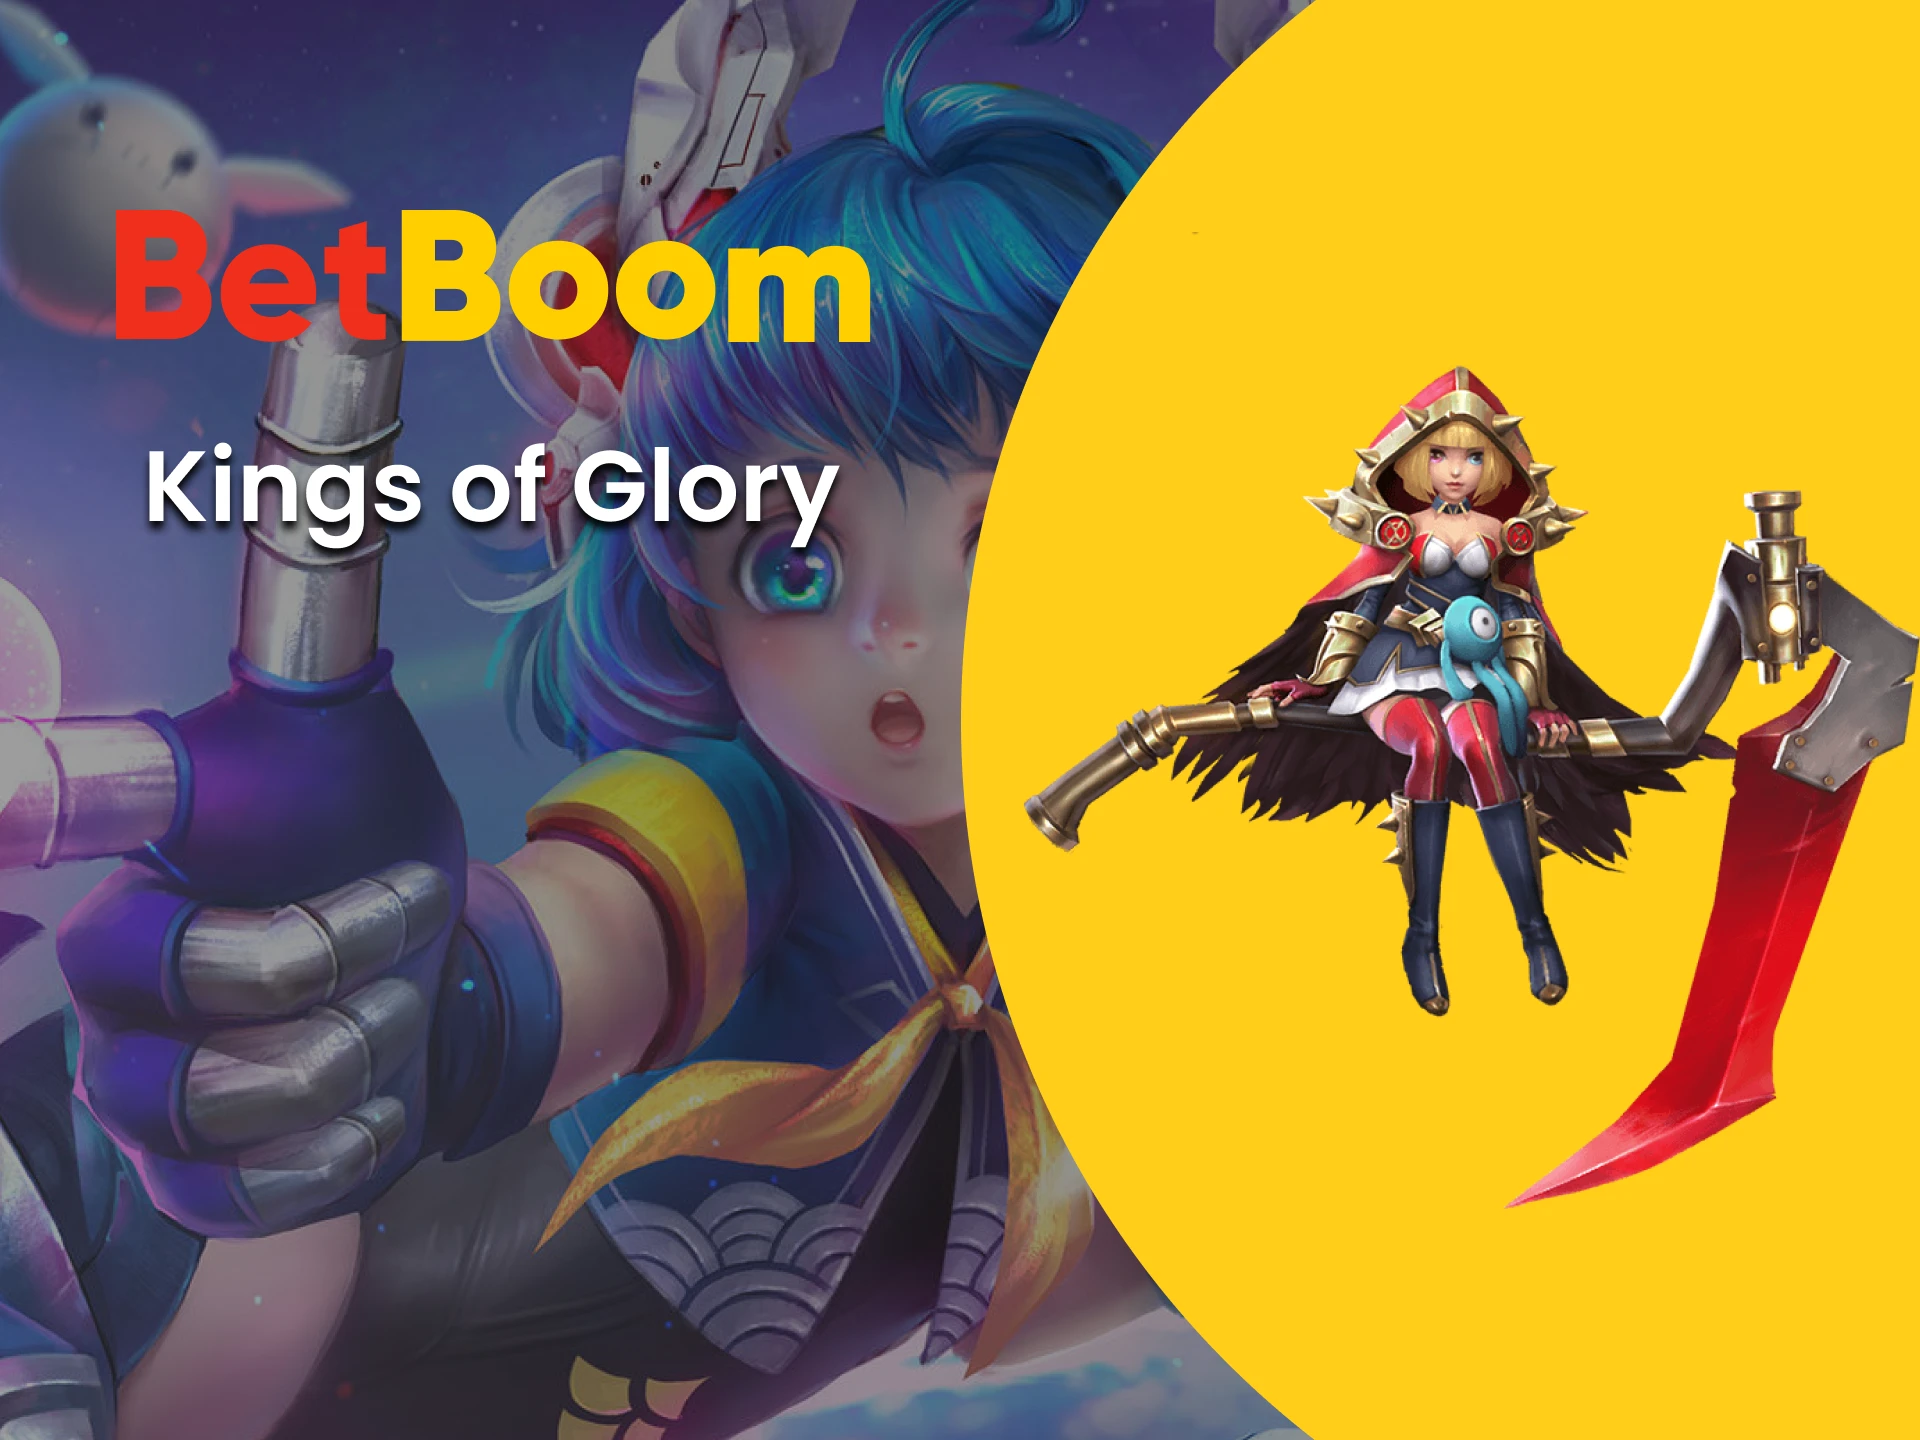 Para apostas em e-sports do Betboom, escolha King of Glory.